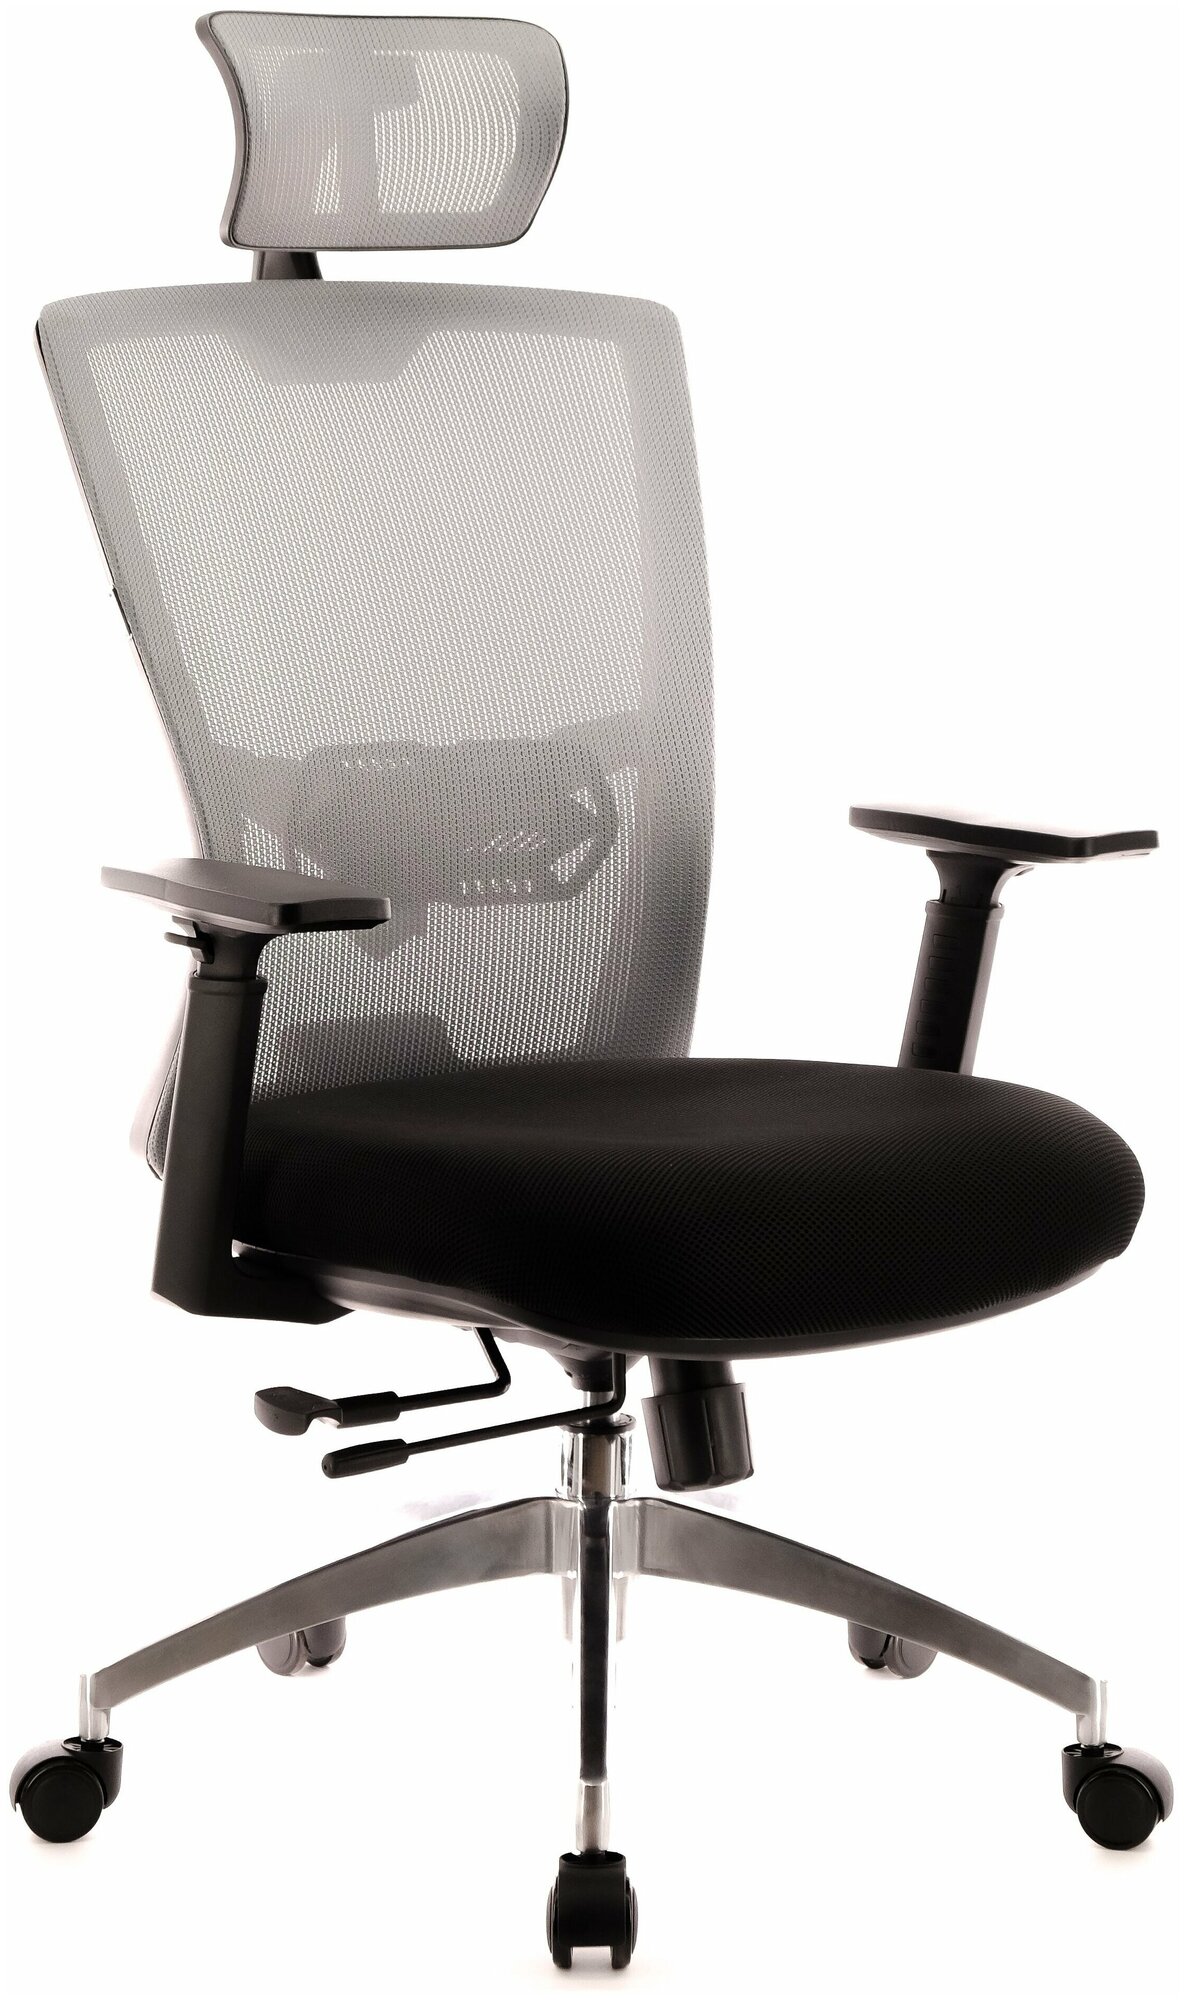 Компьютерное кресло Everprof Polo S для руководителя обивка: текстиль цвет: серый